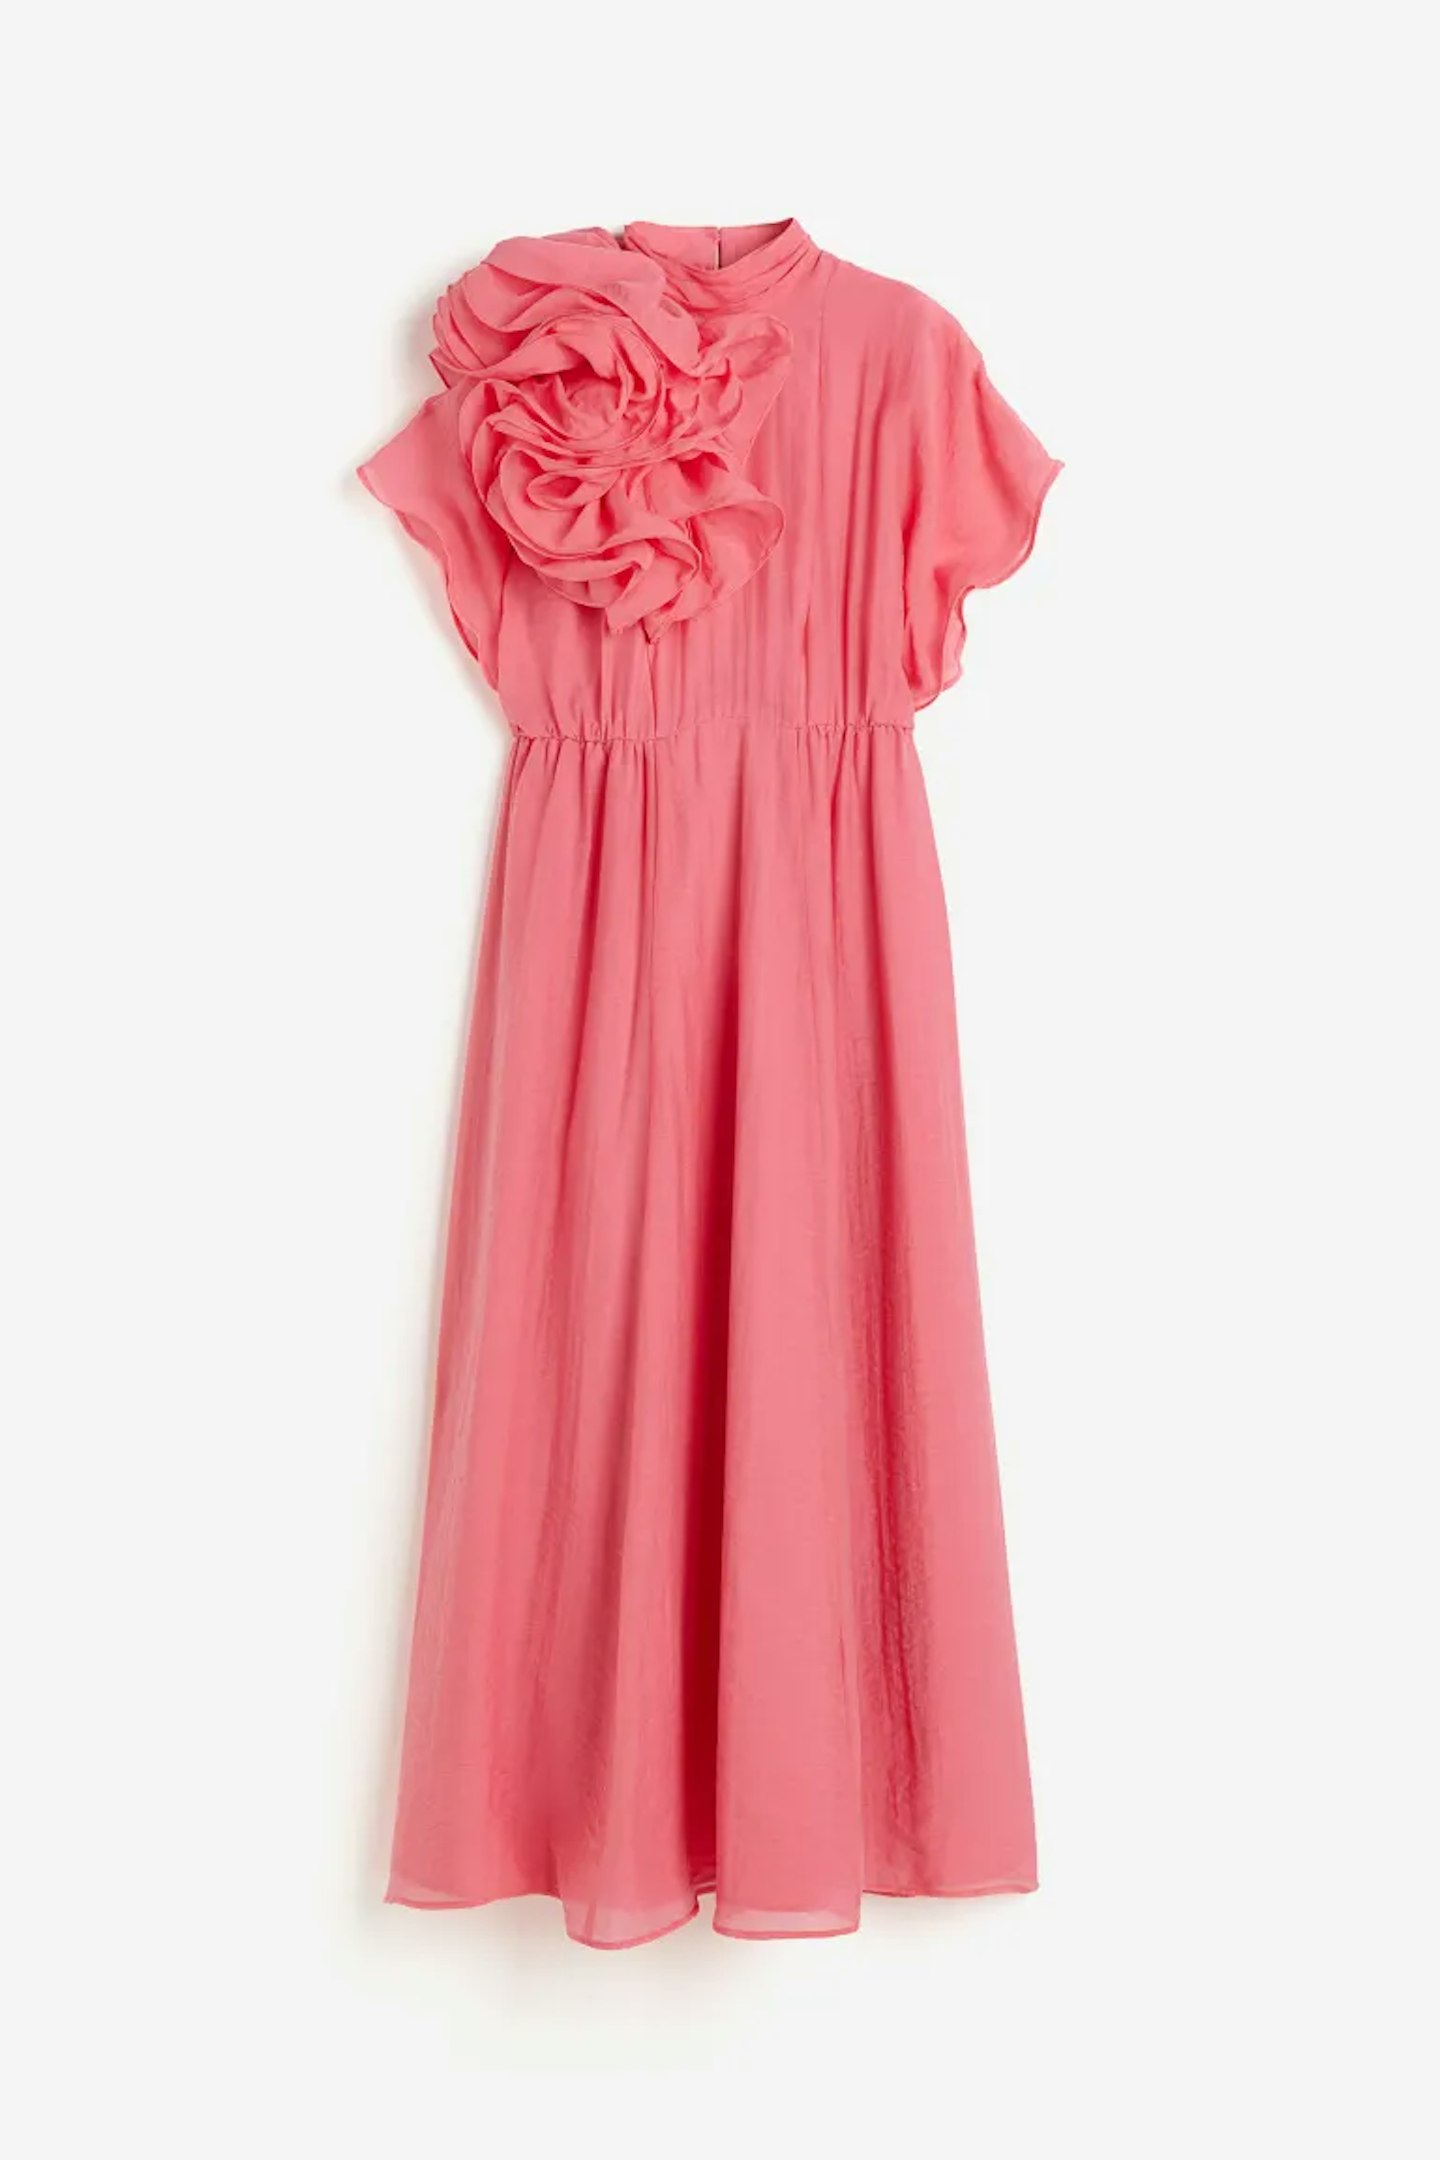 hm pink dress 